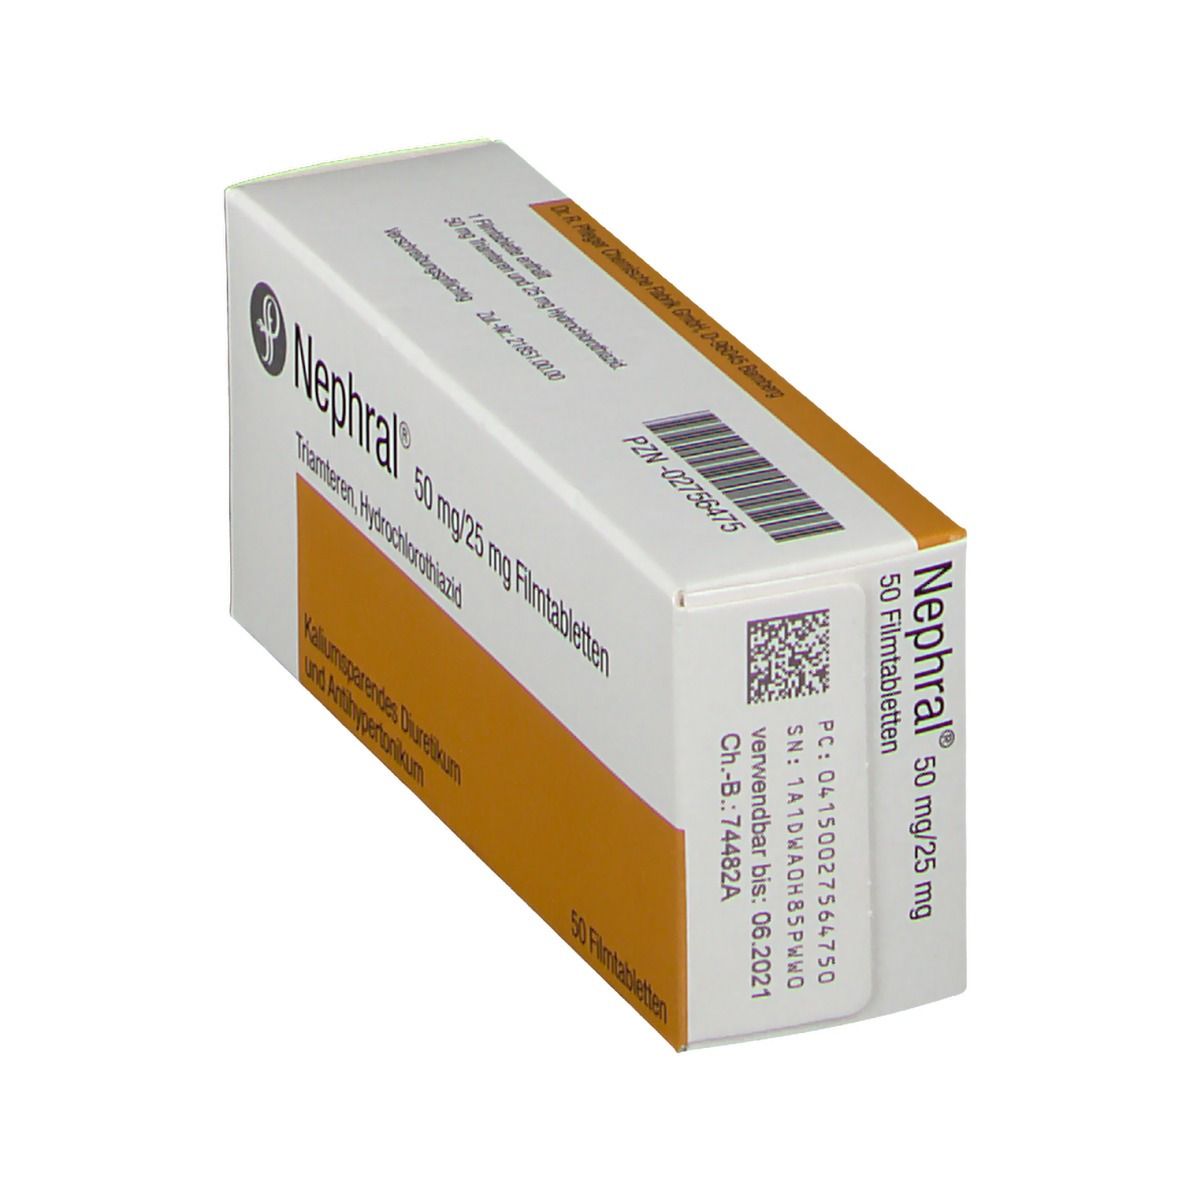 Nephral® 50 mg/25 mg